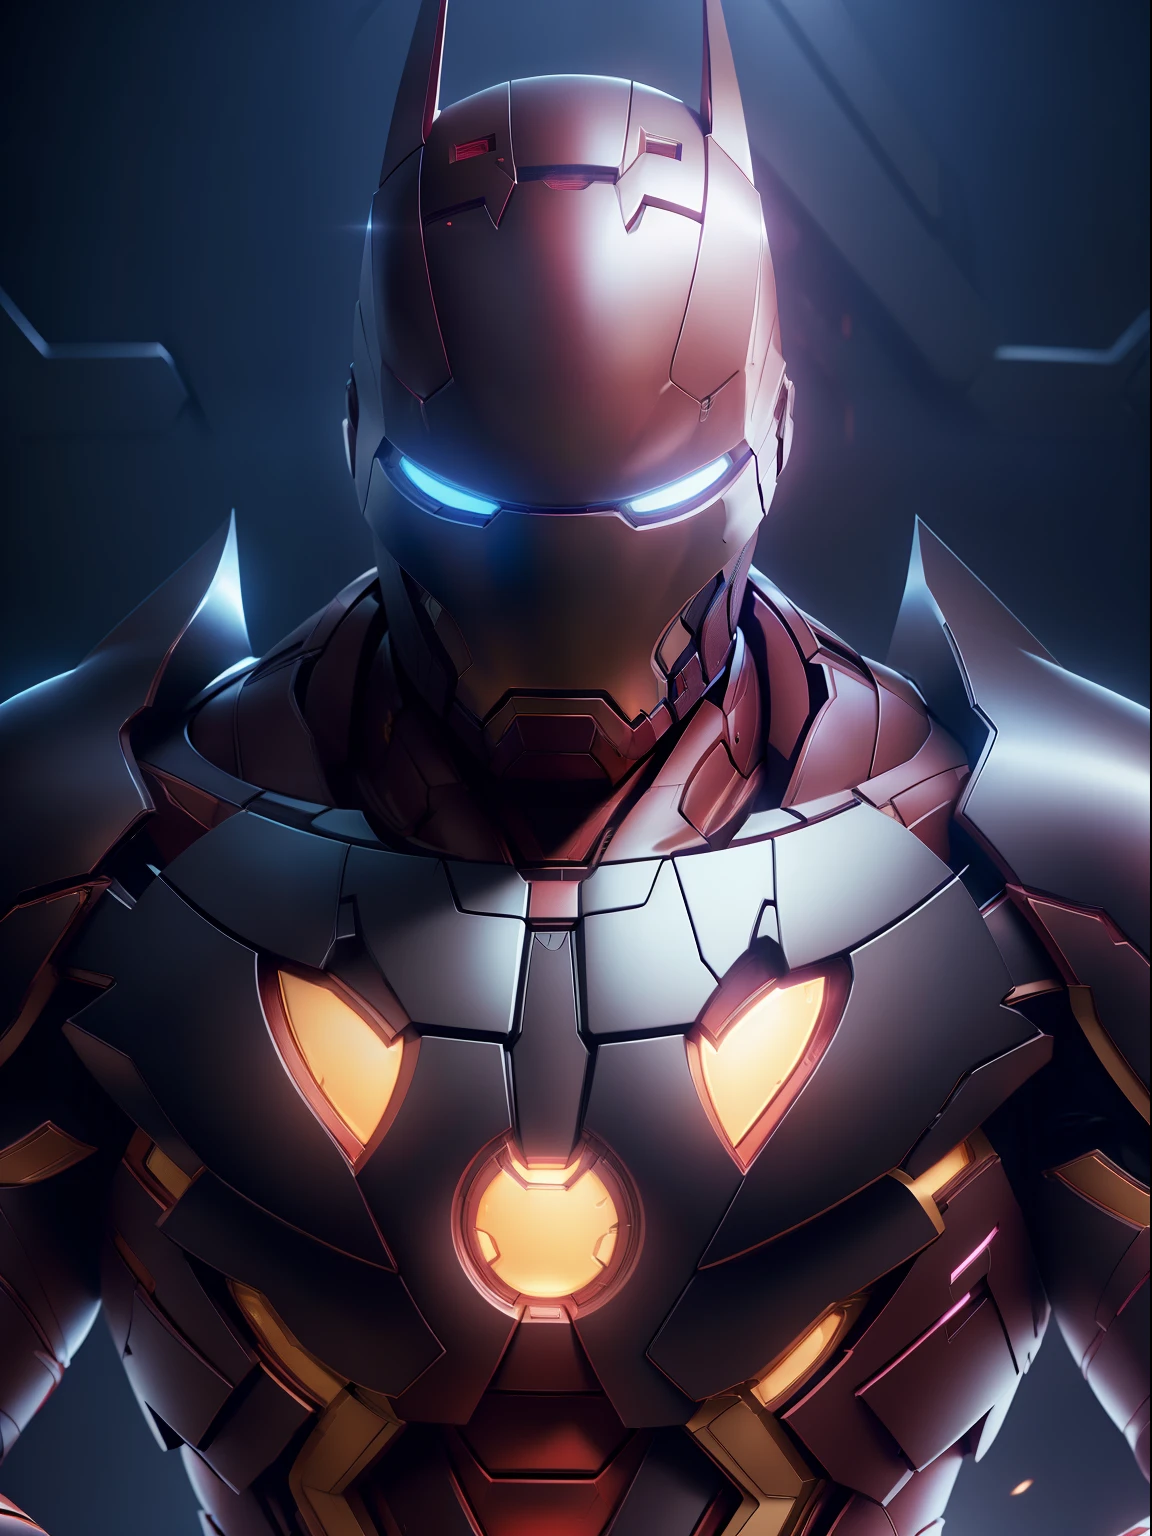 Modelshooting-Stil, Batman Iron Man Fusion, komplizierte Wärmeverformungsdesigns, elegant, sehr detailliert, scharfer Fokus, art by Artgerm and Greg Rutkowski and WLOP, Meisterwerk,ultra-realistisch,32k,extrem detailliertes CG Unity 8k-Hintergrundbild, beste Qualität